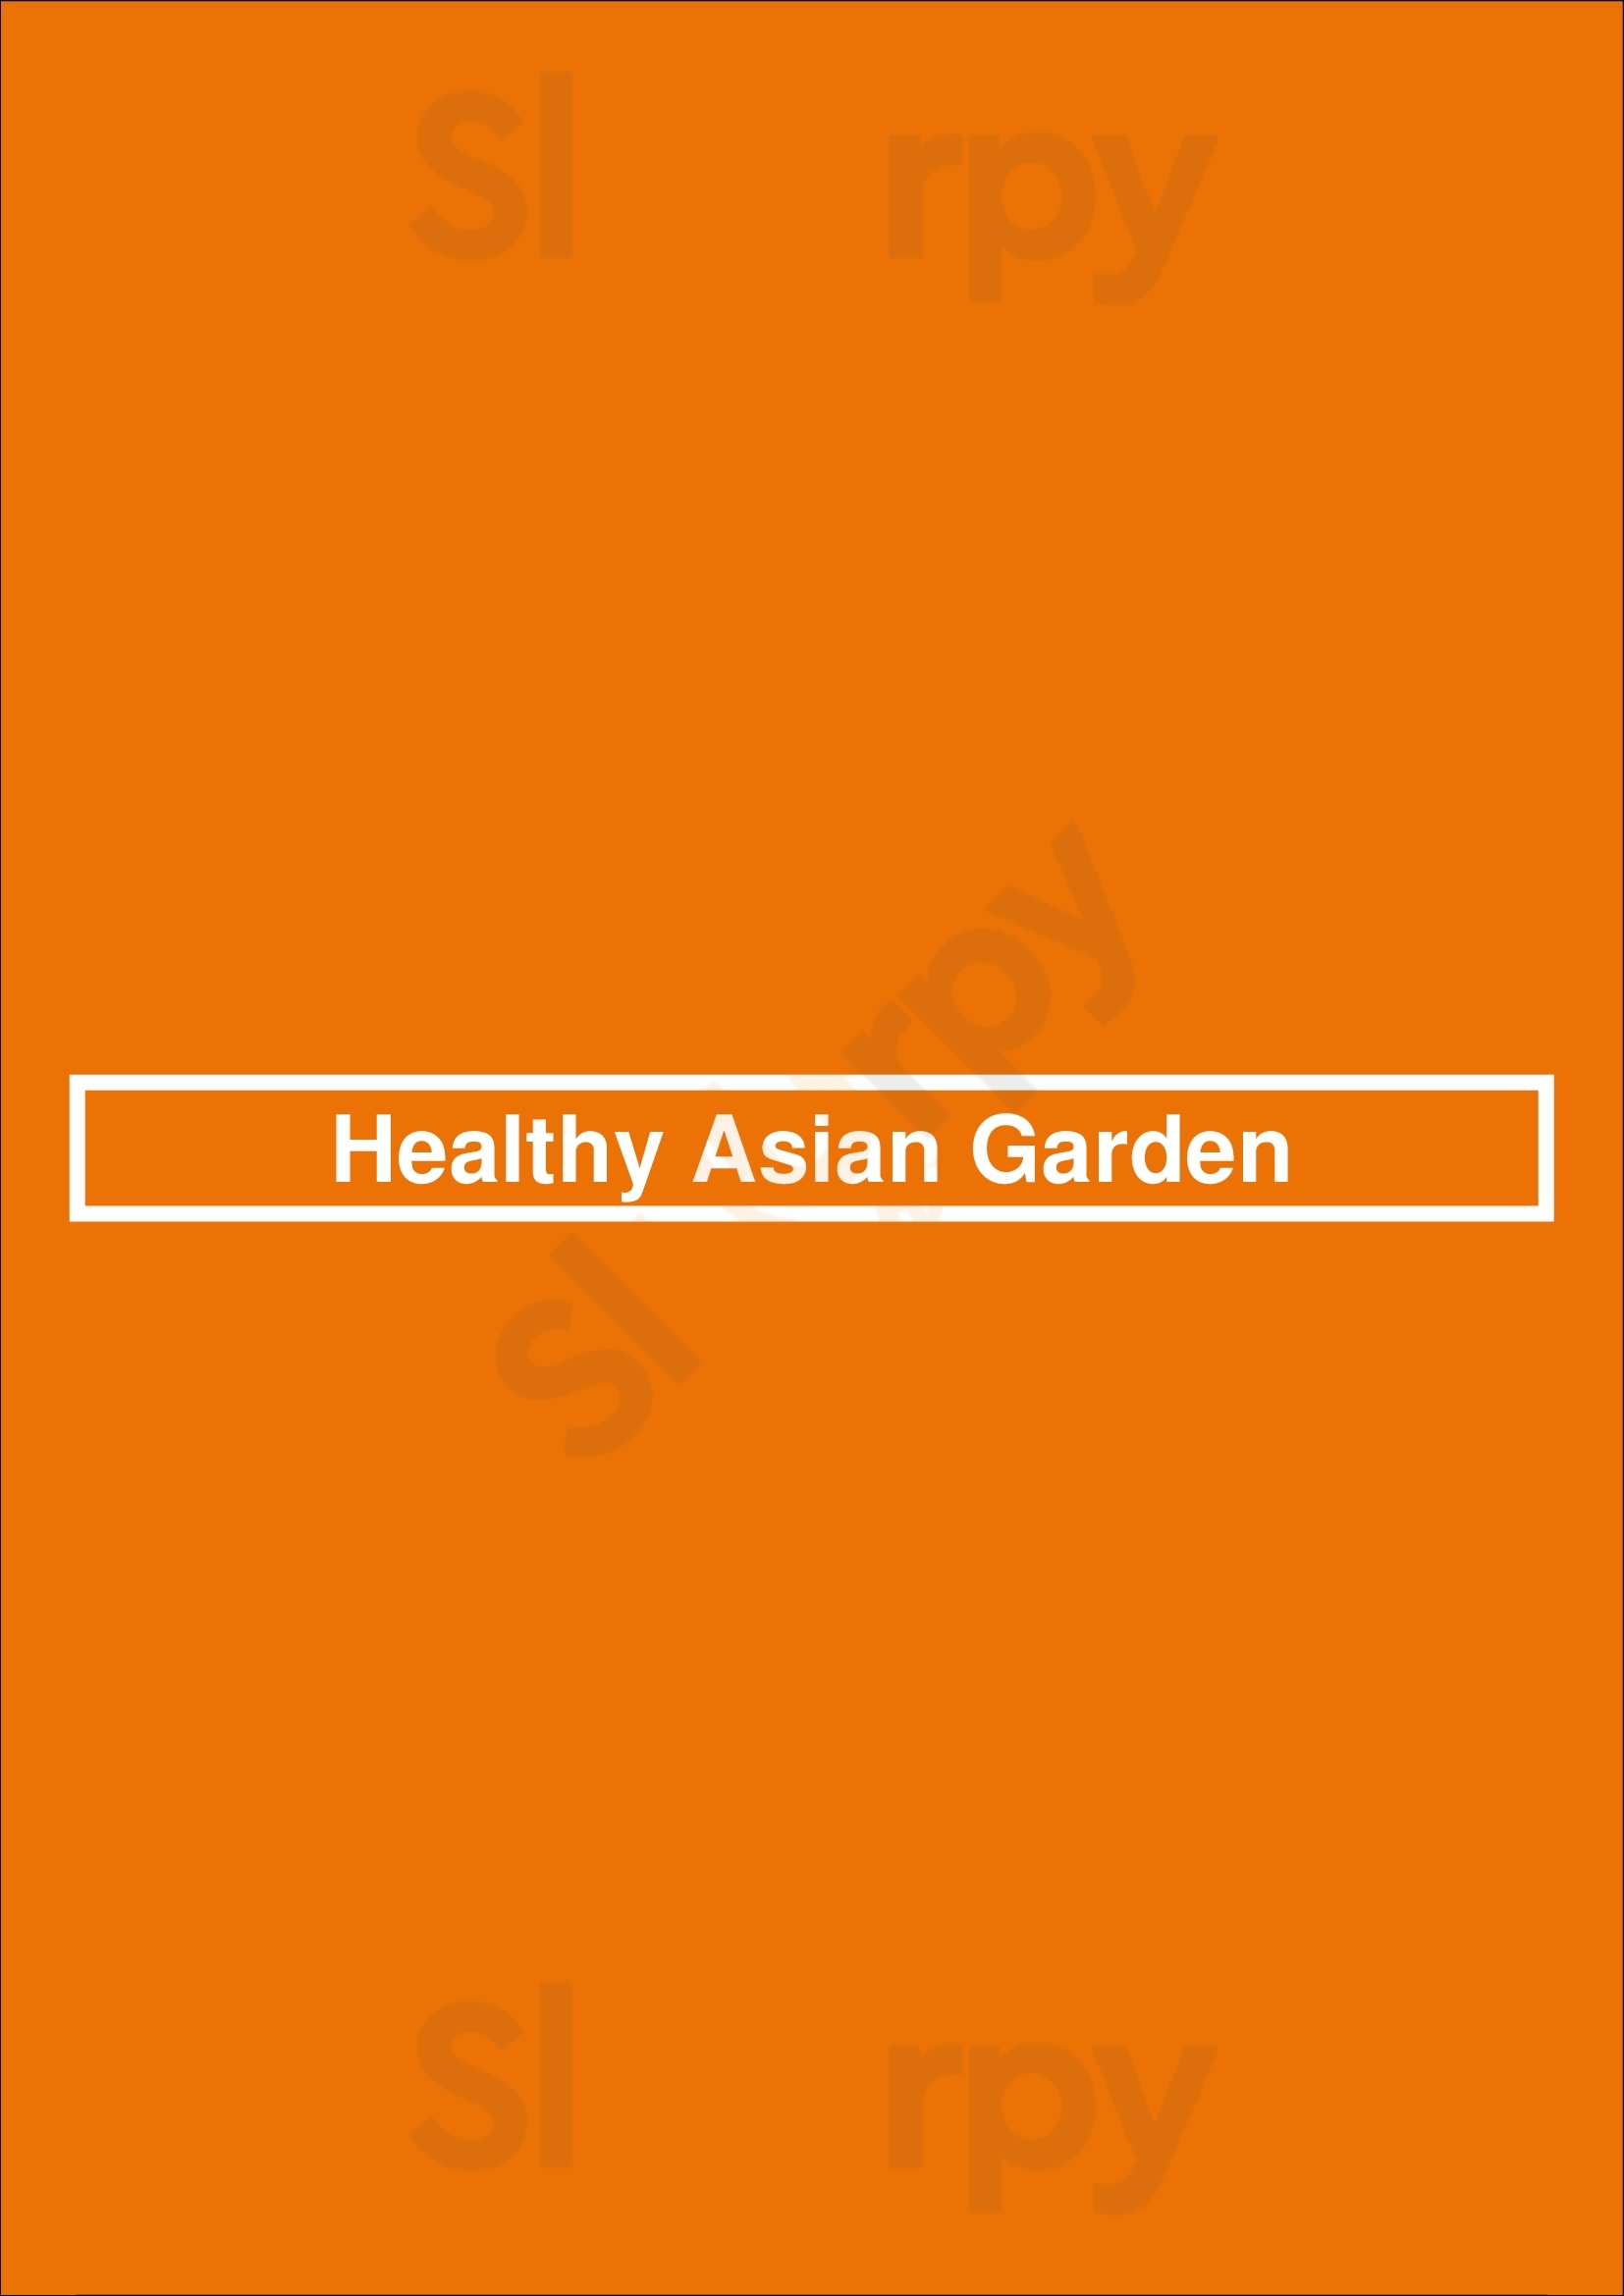 Healthy Asian Garden Denver Menu - 1